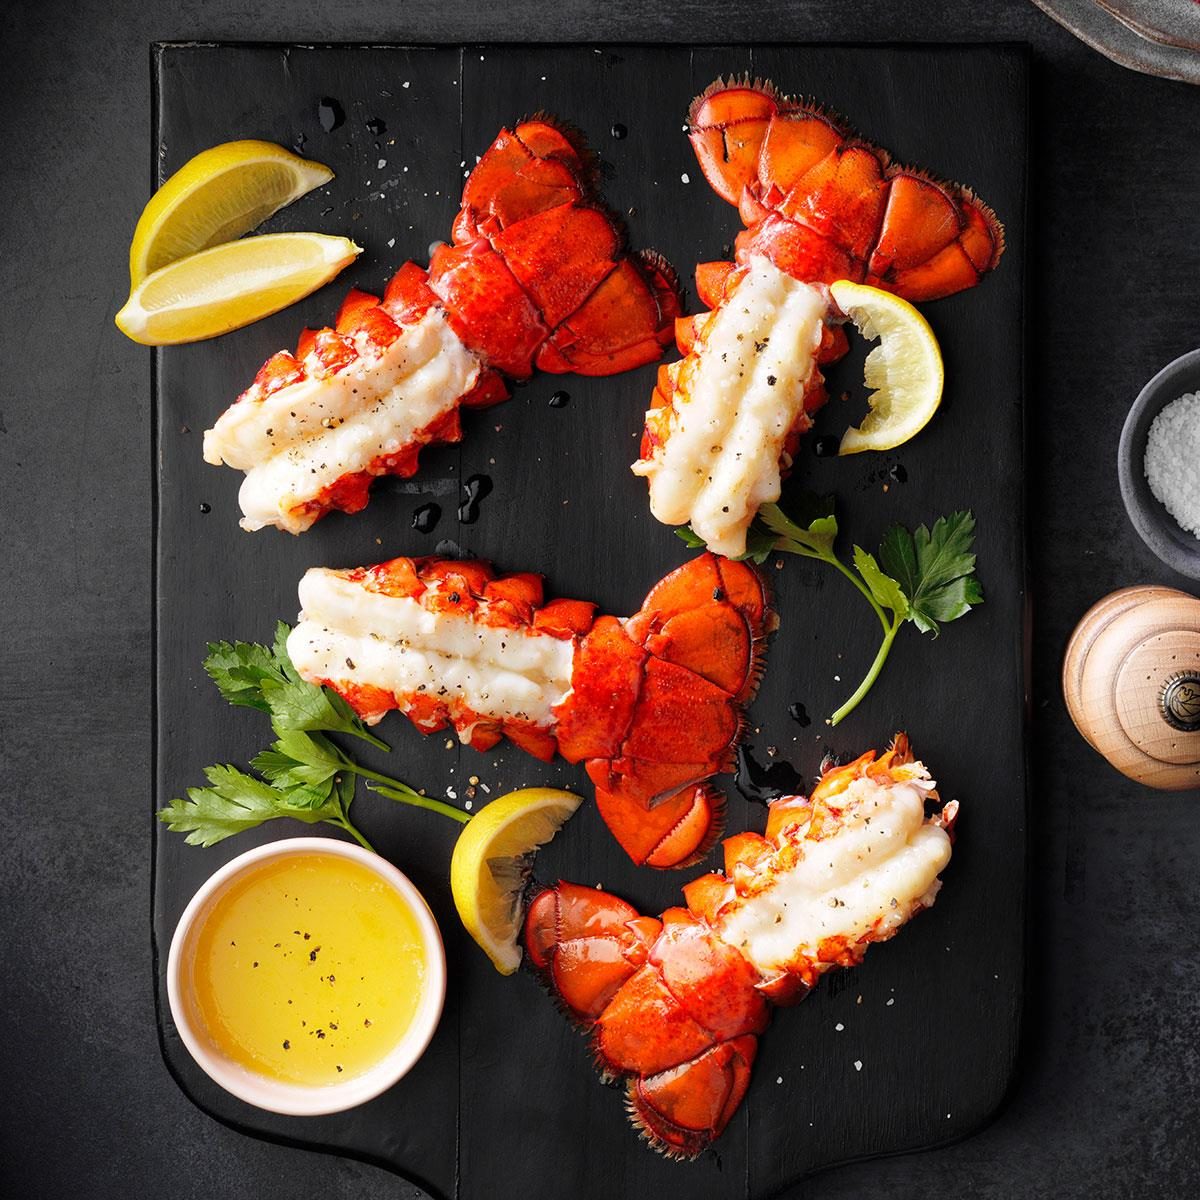 Broiled Lobster Tails - Cafe Delites